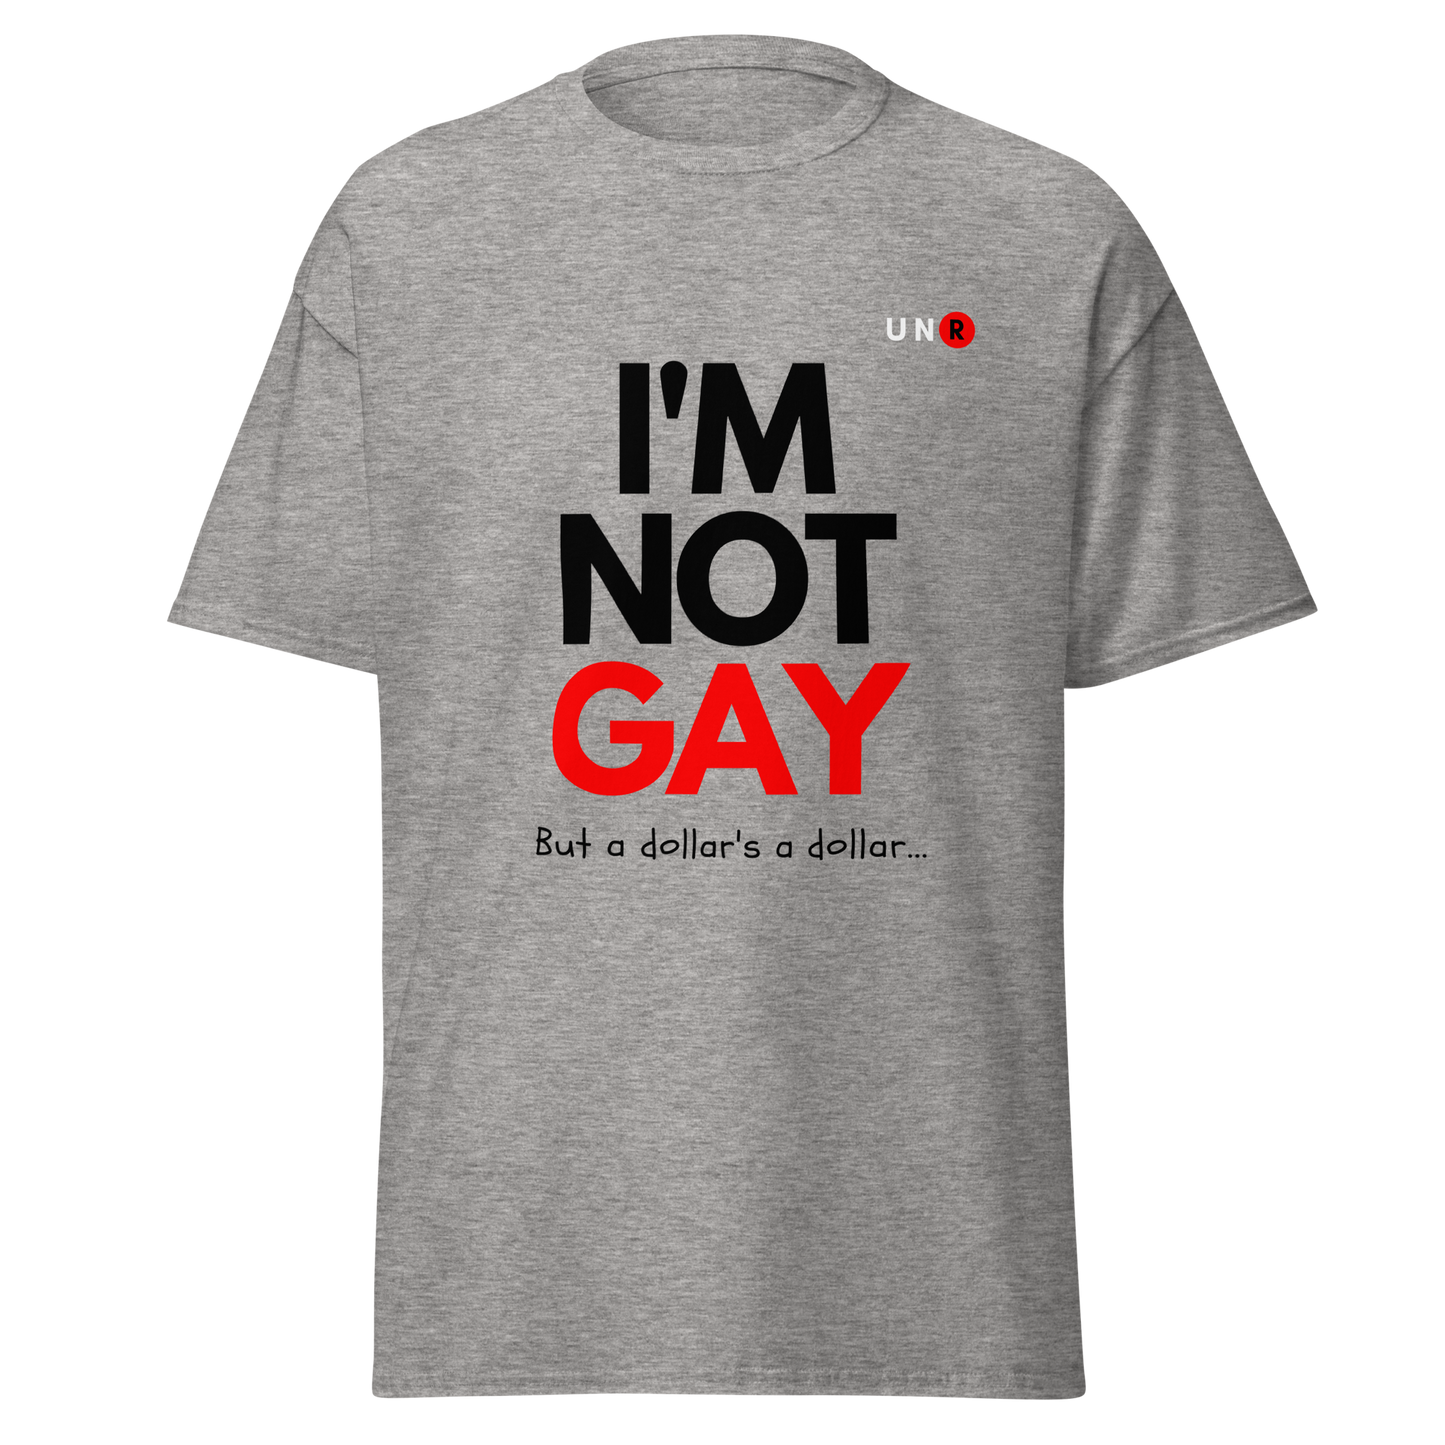 I'm Not Gay T-shirt